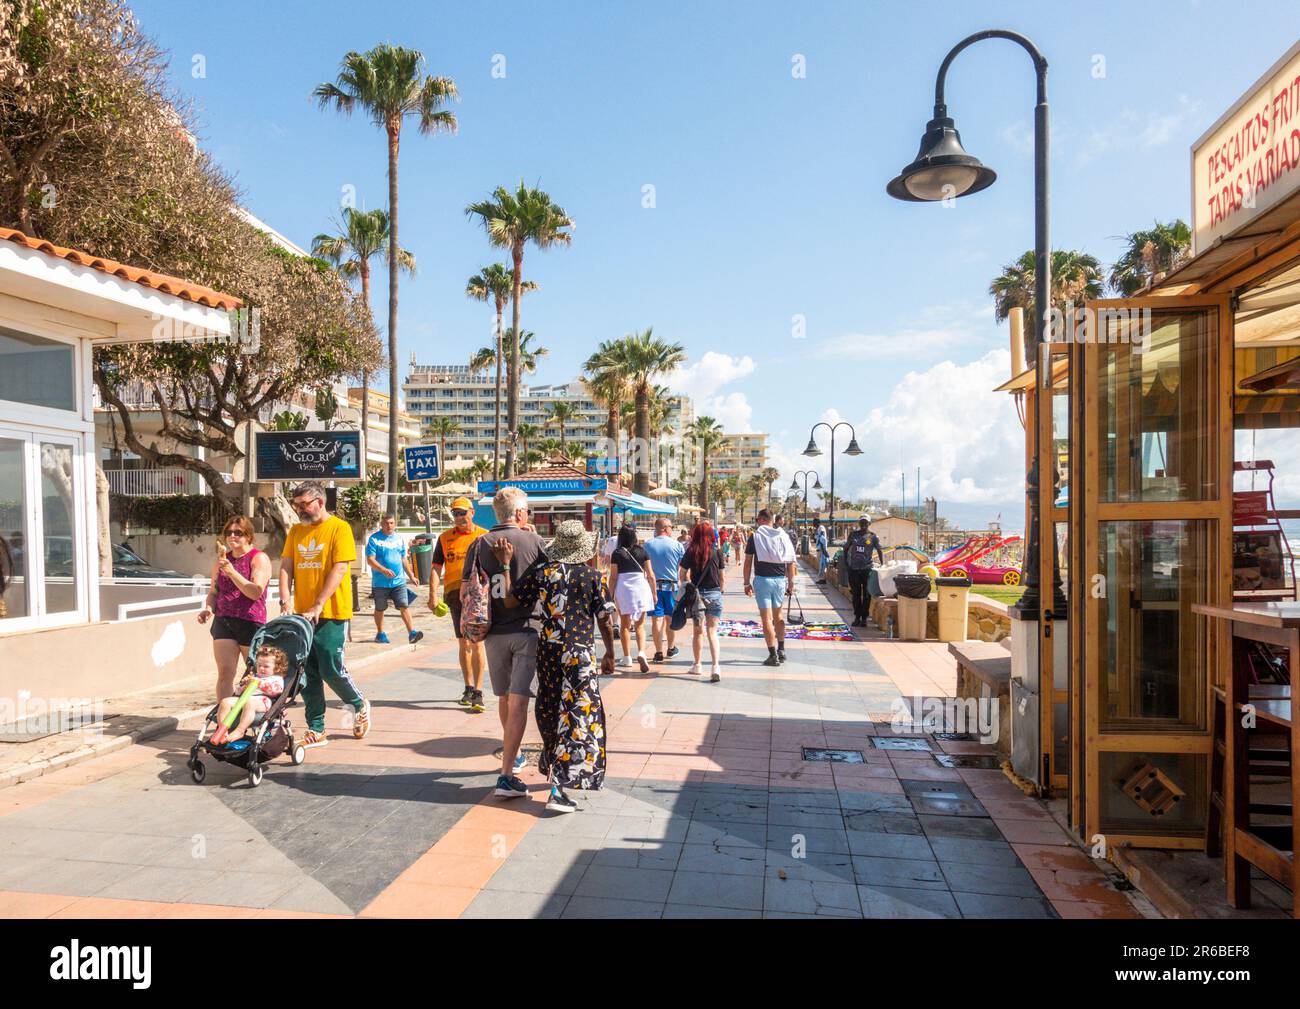 Affollato lungomare, turisti a piedi lungo il passaggio pedonale, spiaggia di Carihuela, Torremolinos, Costa del Sol, Spagna. Foto Stock